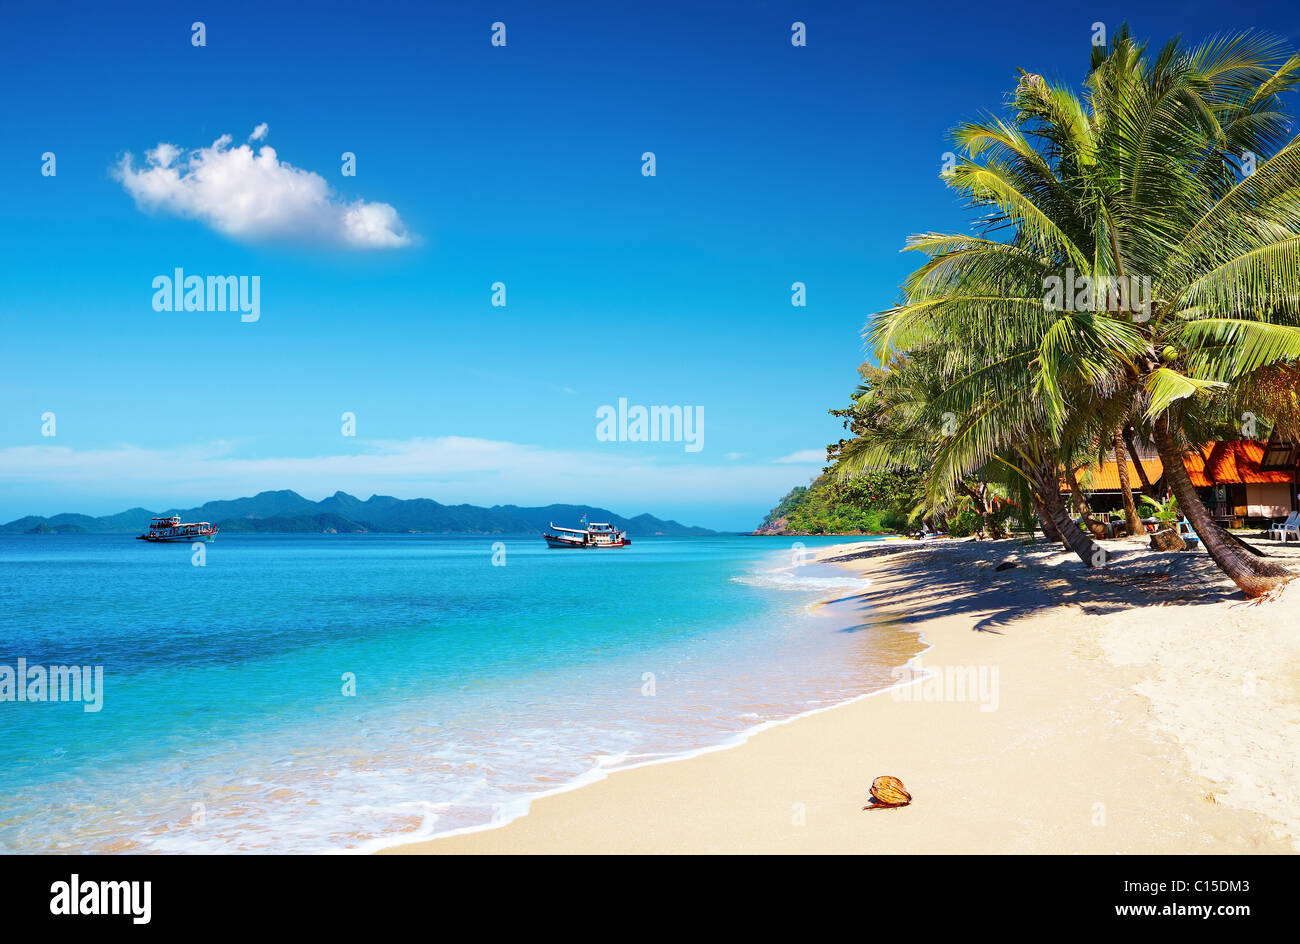 Playa tropical con palmeras de coco y bungalow, Tailandia Foto de stock